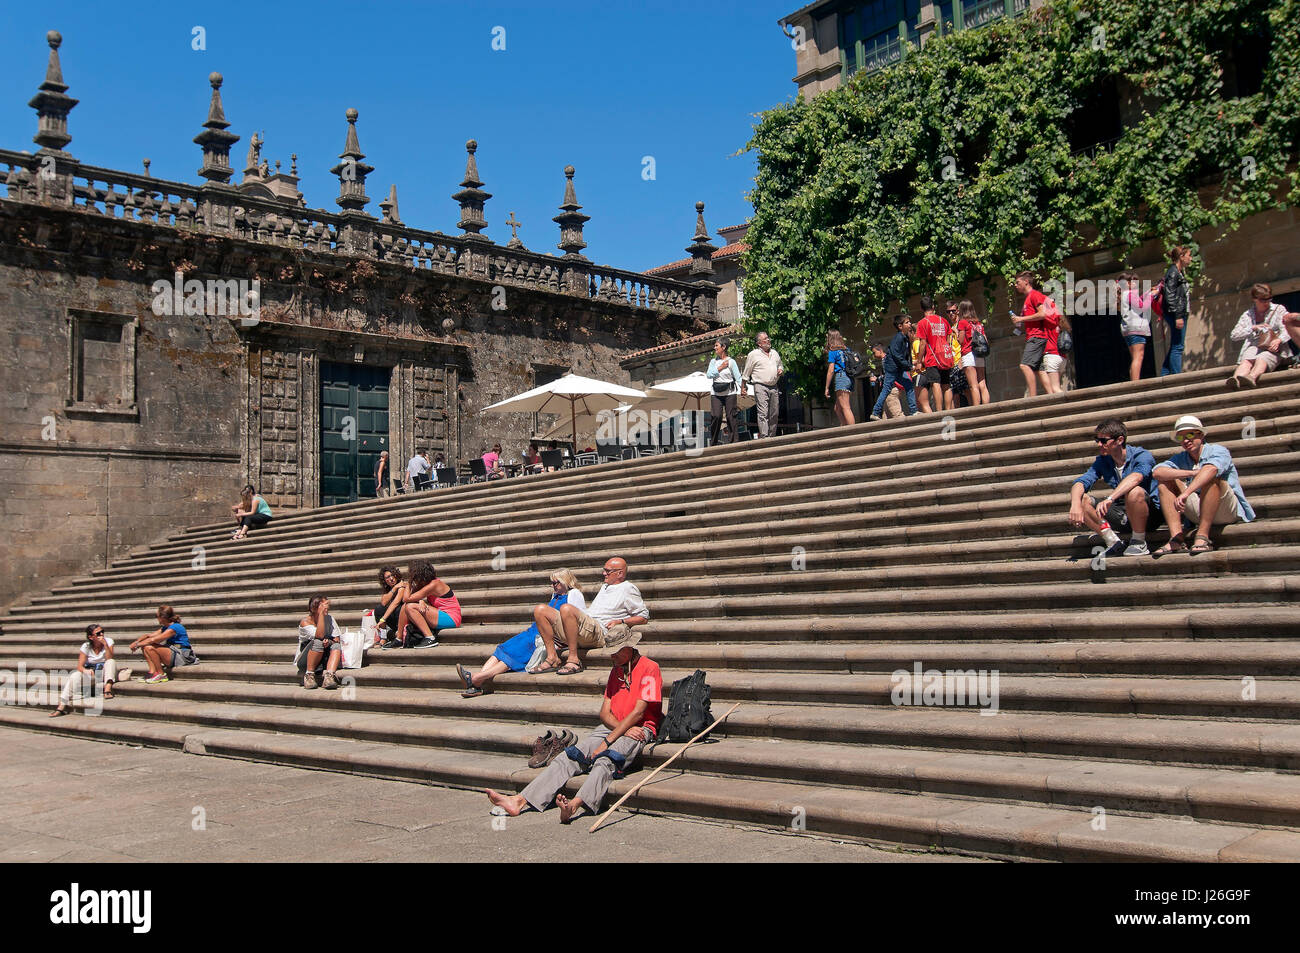 Plaza de Quintana und Pilger ruht, Santiago de Compostela, La Coruña Provinz, Region Galicien, Spanien, Europa Stockfoto